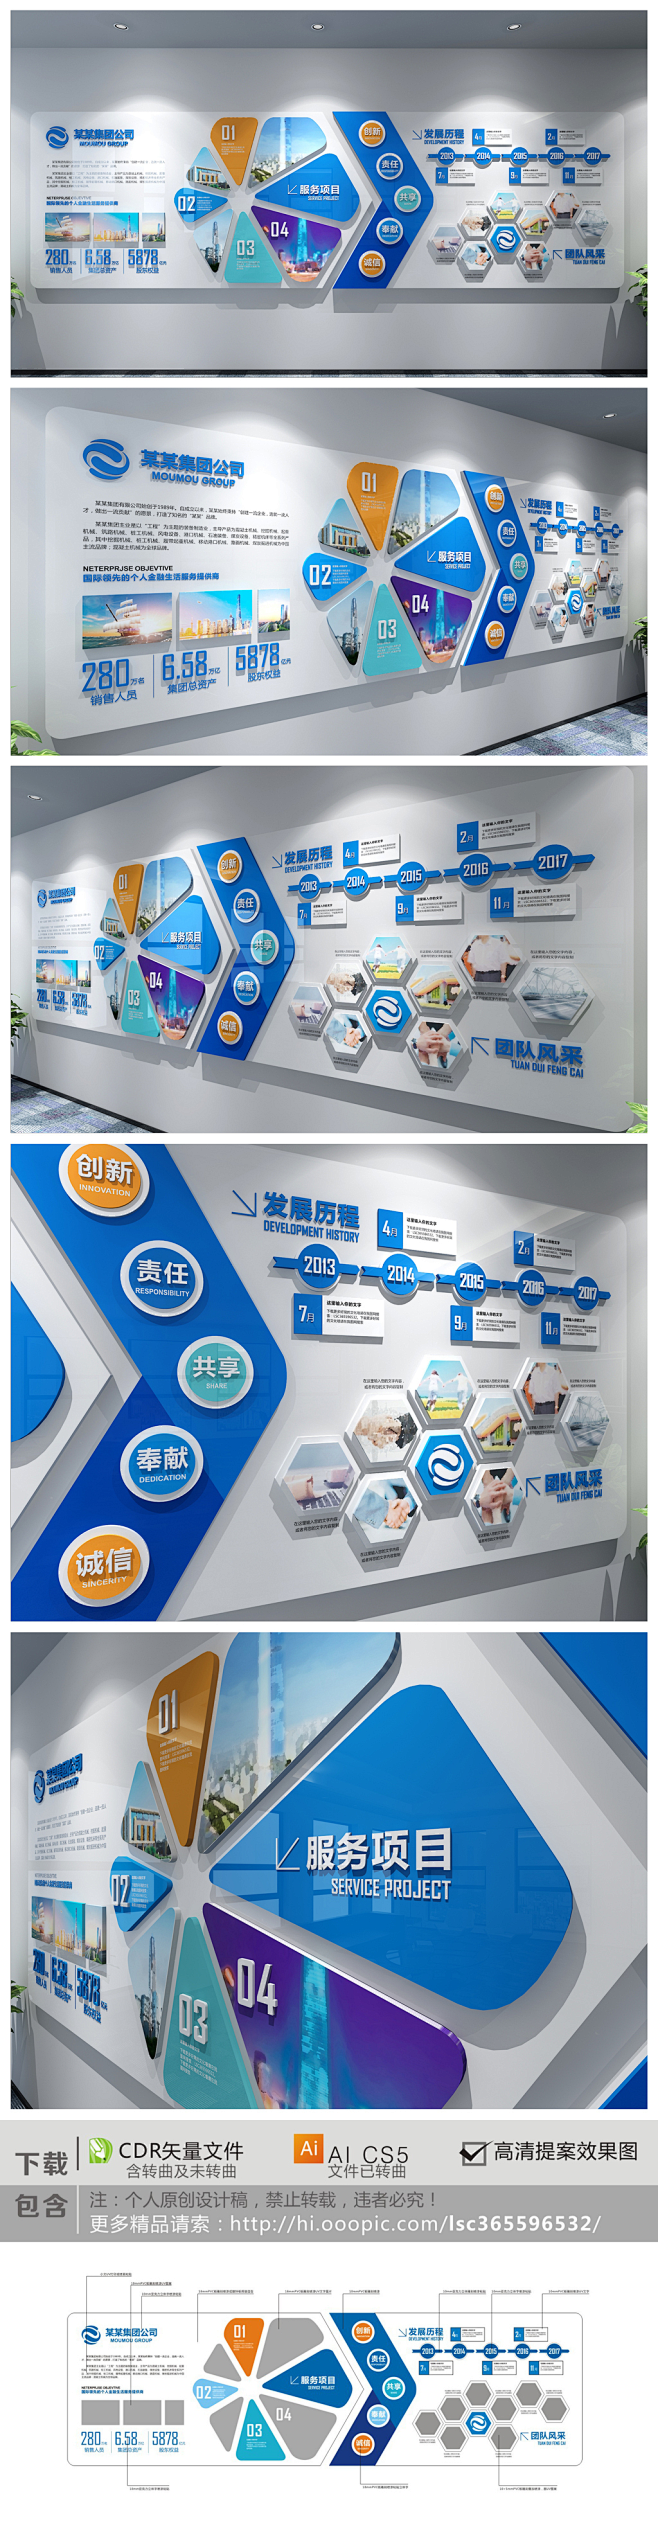 公司科技背景墙简介发展历程设计蓝色文化企业大气企业文化企业形象墙